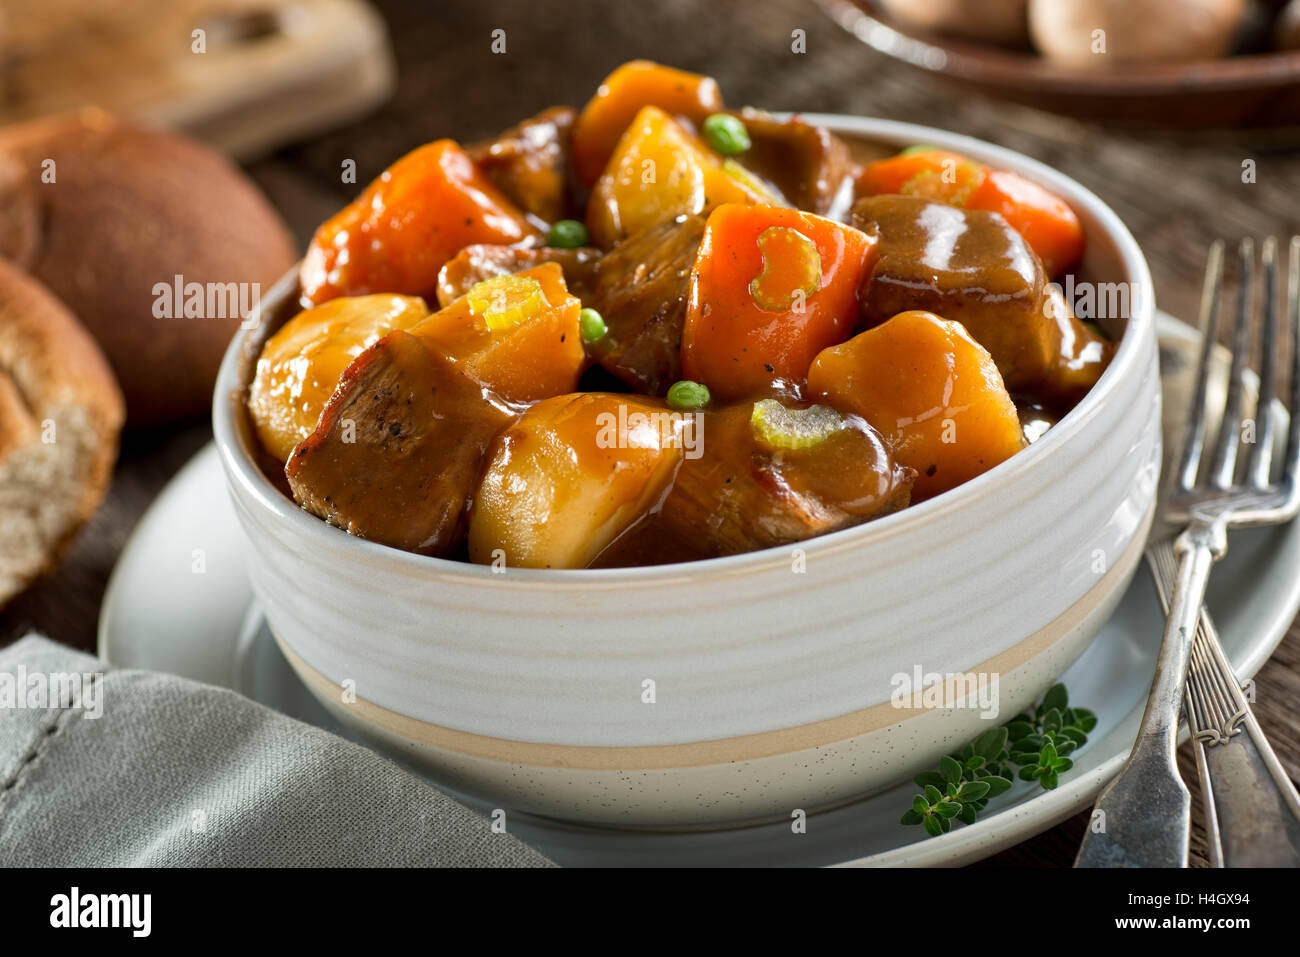 Eine leckere Schale mit reichhaltigen und herzhaften Rindfleisch-Eintopf mit Kartoffeln, Rüben, Karotten, Sellerie und Erbsen. Stockfoto